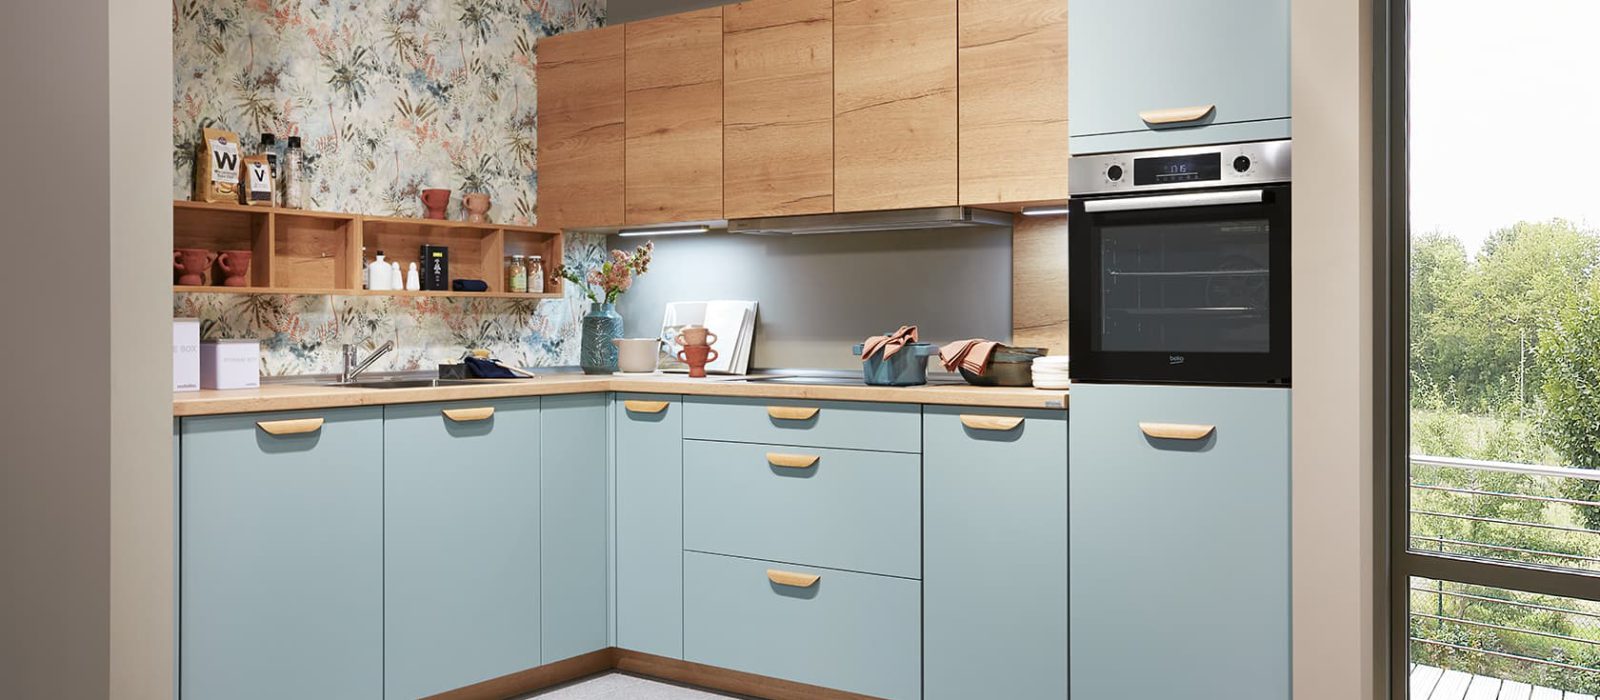 SIKO Matná kuchyně dřevodekor modrá, květinový obklad, obkladový panel za kuchyňskou linkou, dřevěná pracovní deska, kuchyňské doplňky